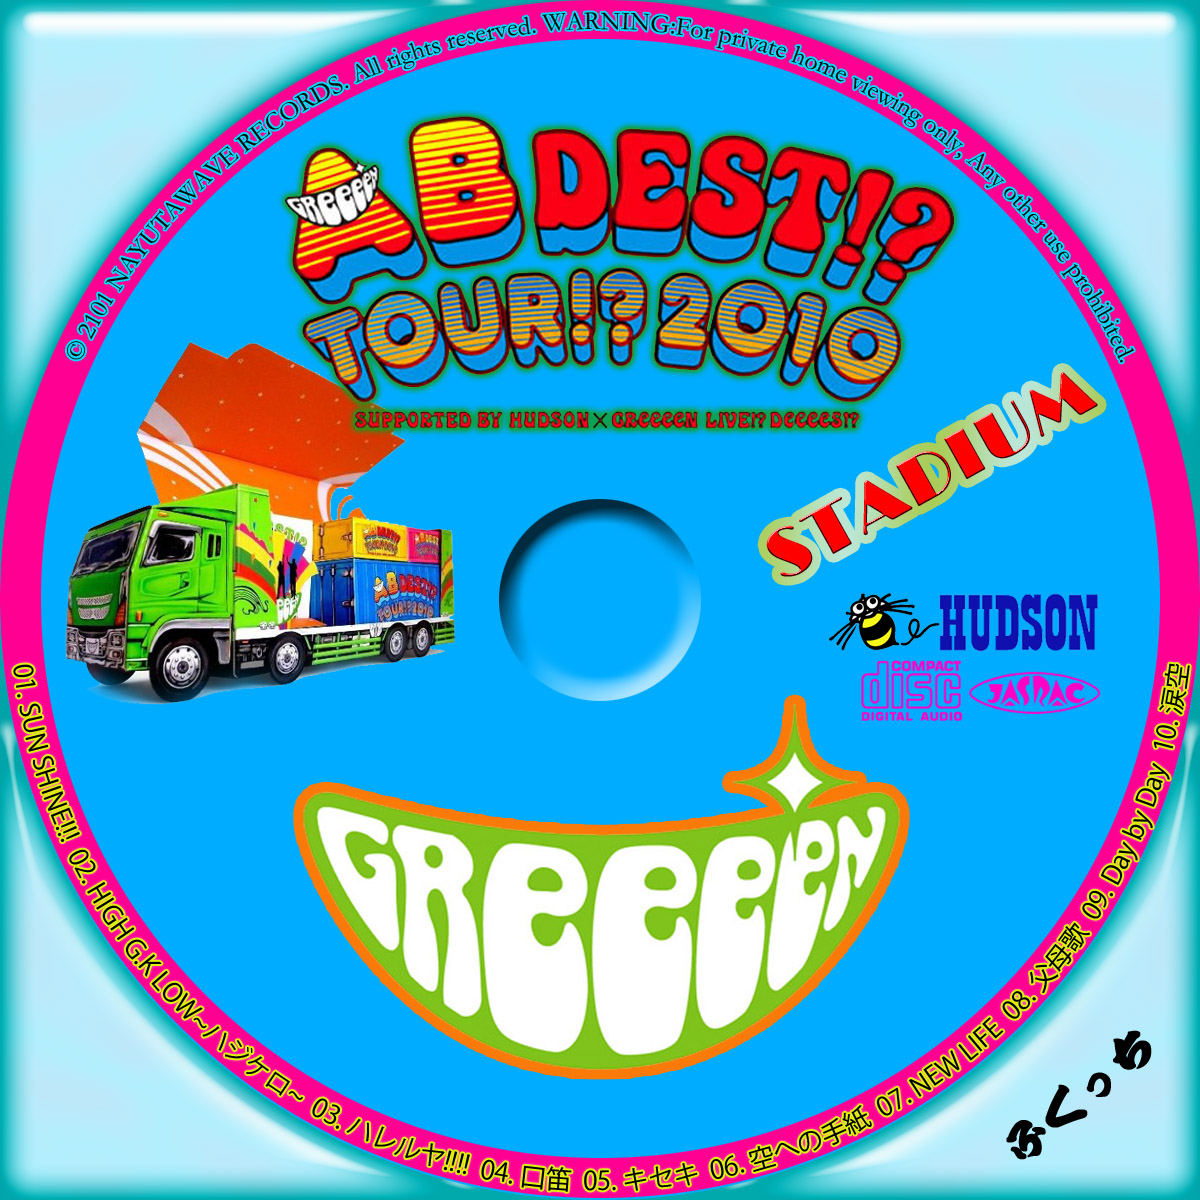 ふくっちの音楽CD/DVDカスタムレーベル AB DEST!? TOUR!? 2010 SUPPORTED BY HUDSON×GReeeeN LIVE !? DeeeeS!?